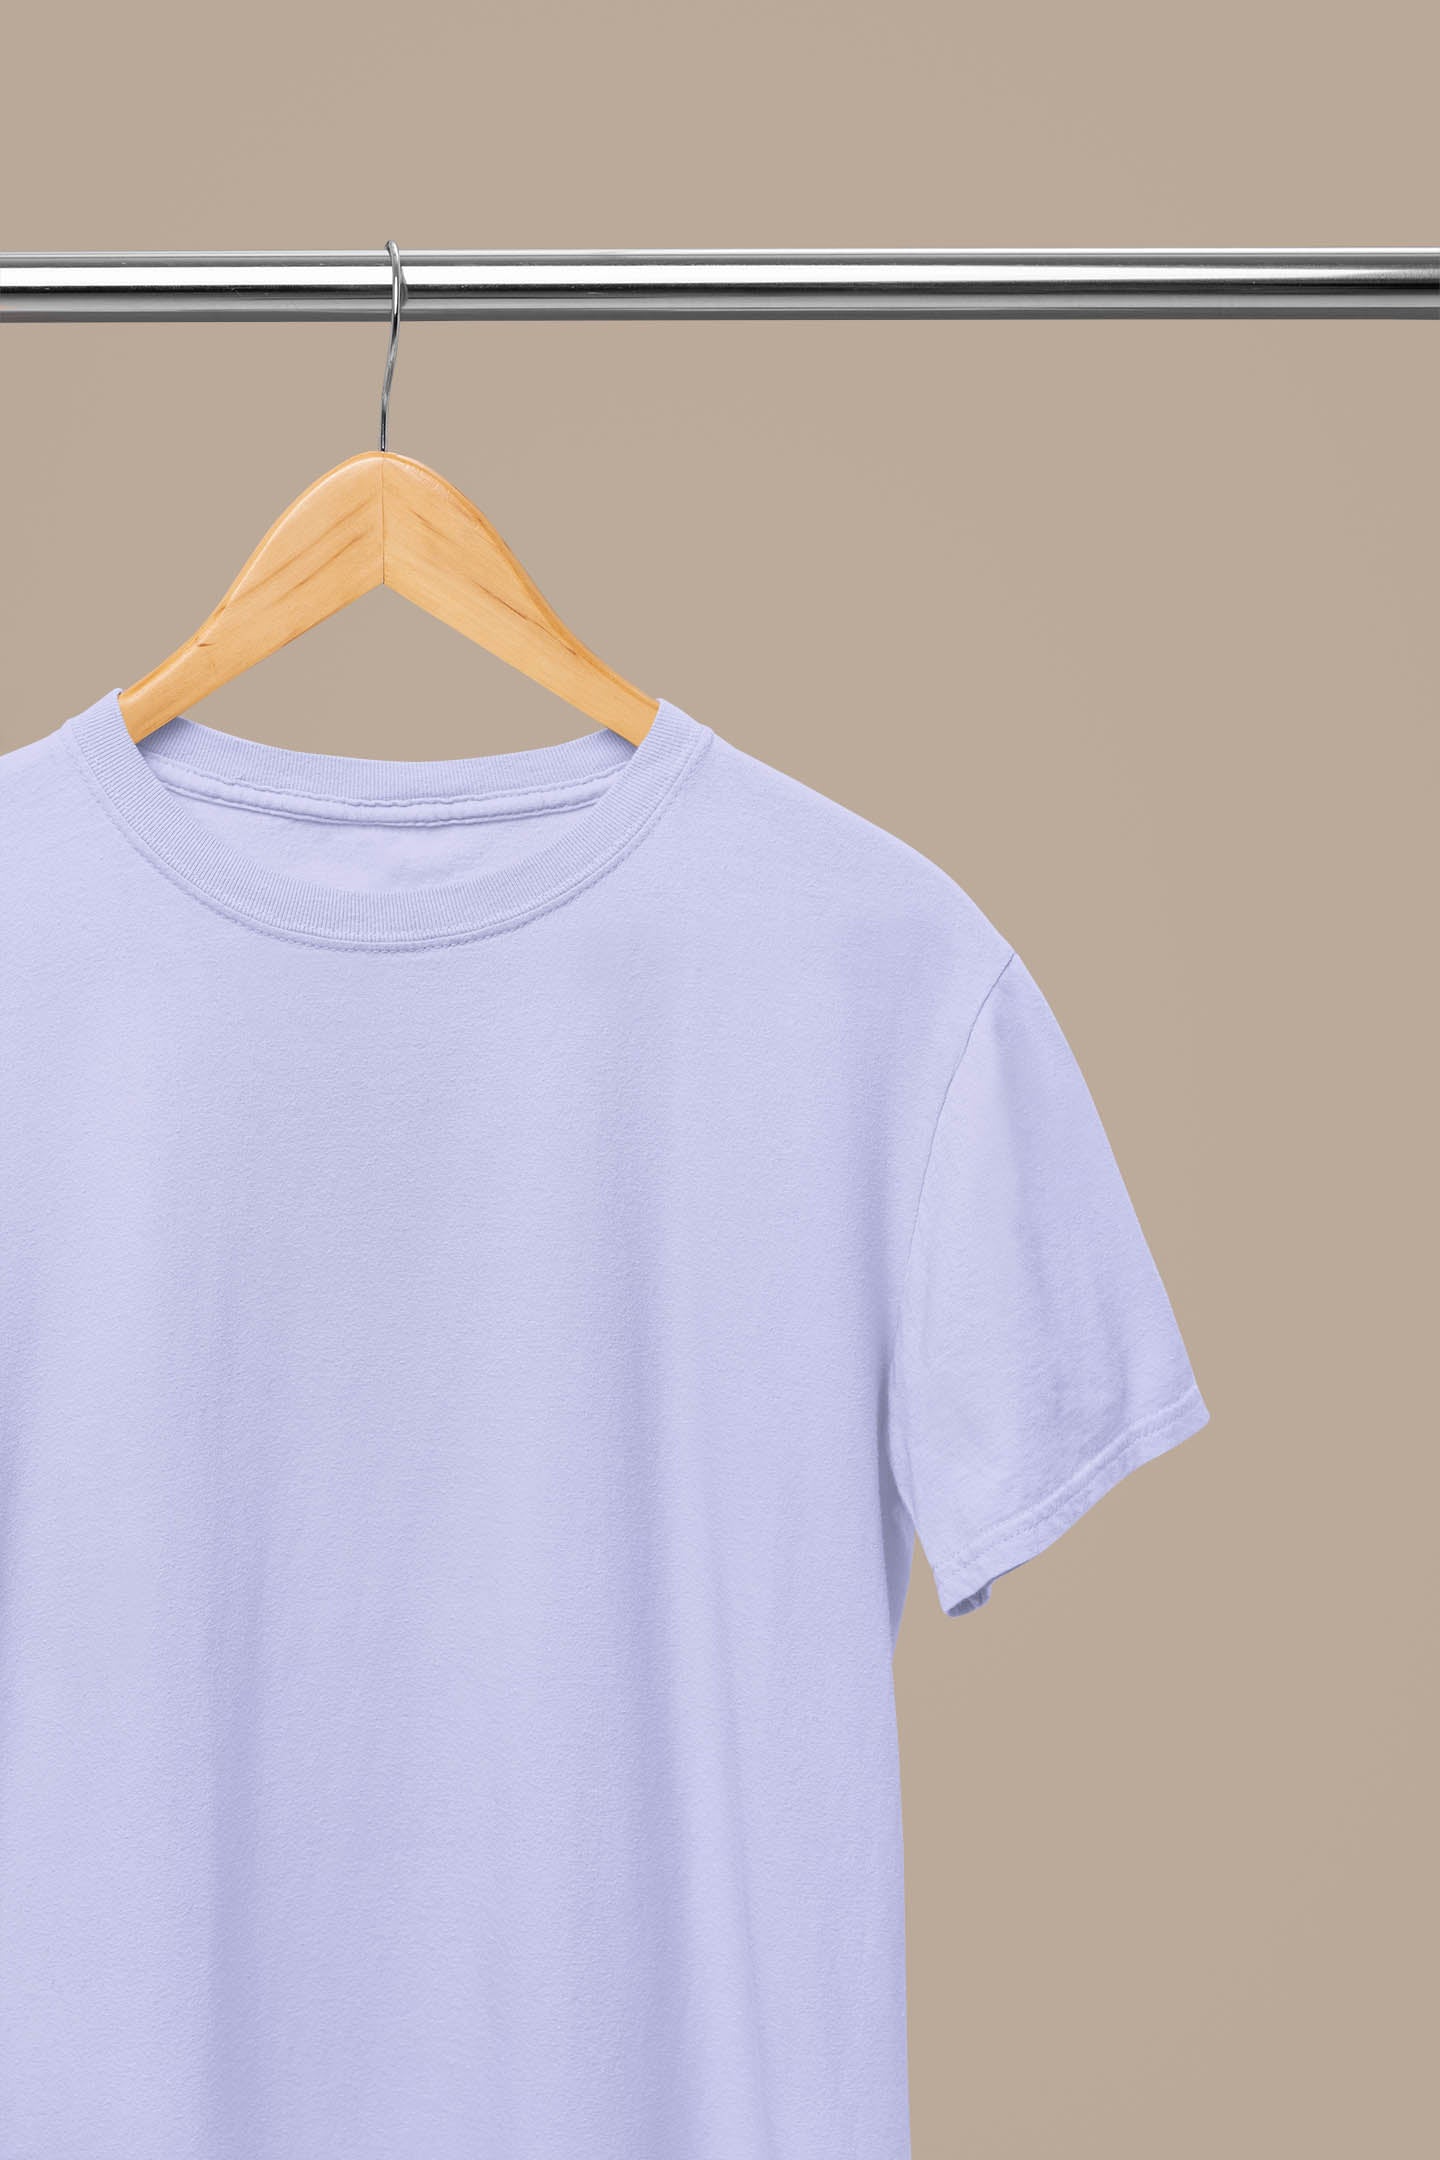 Lavender plain t shirt for men